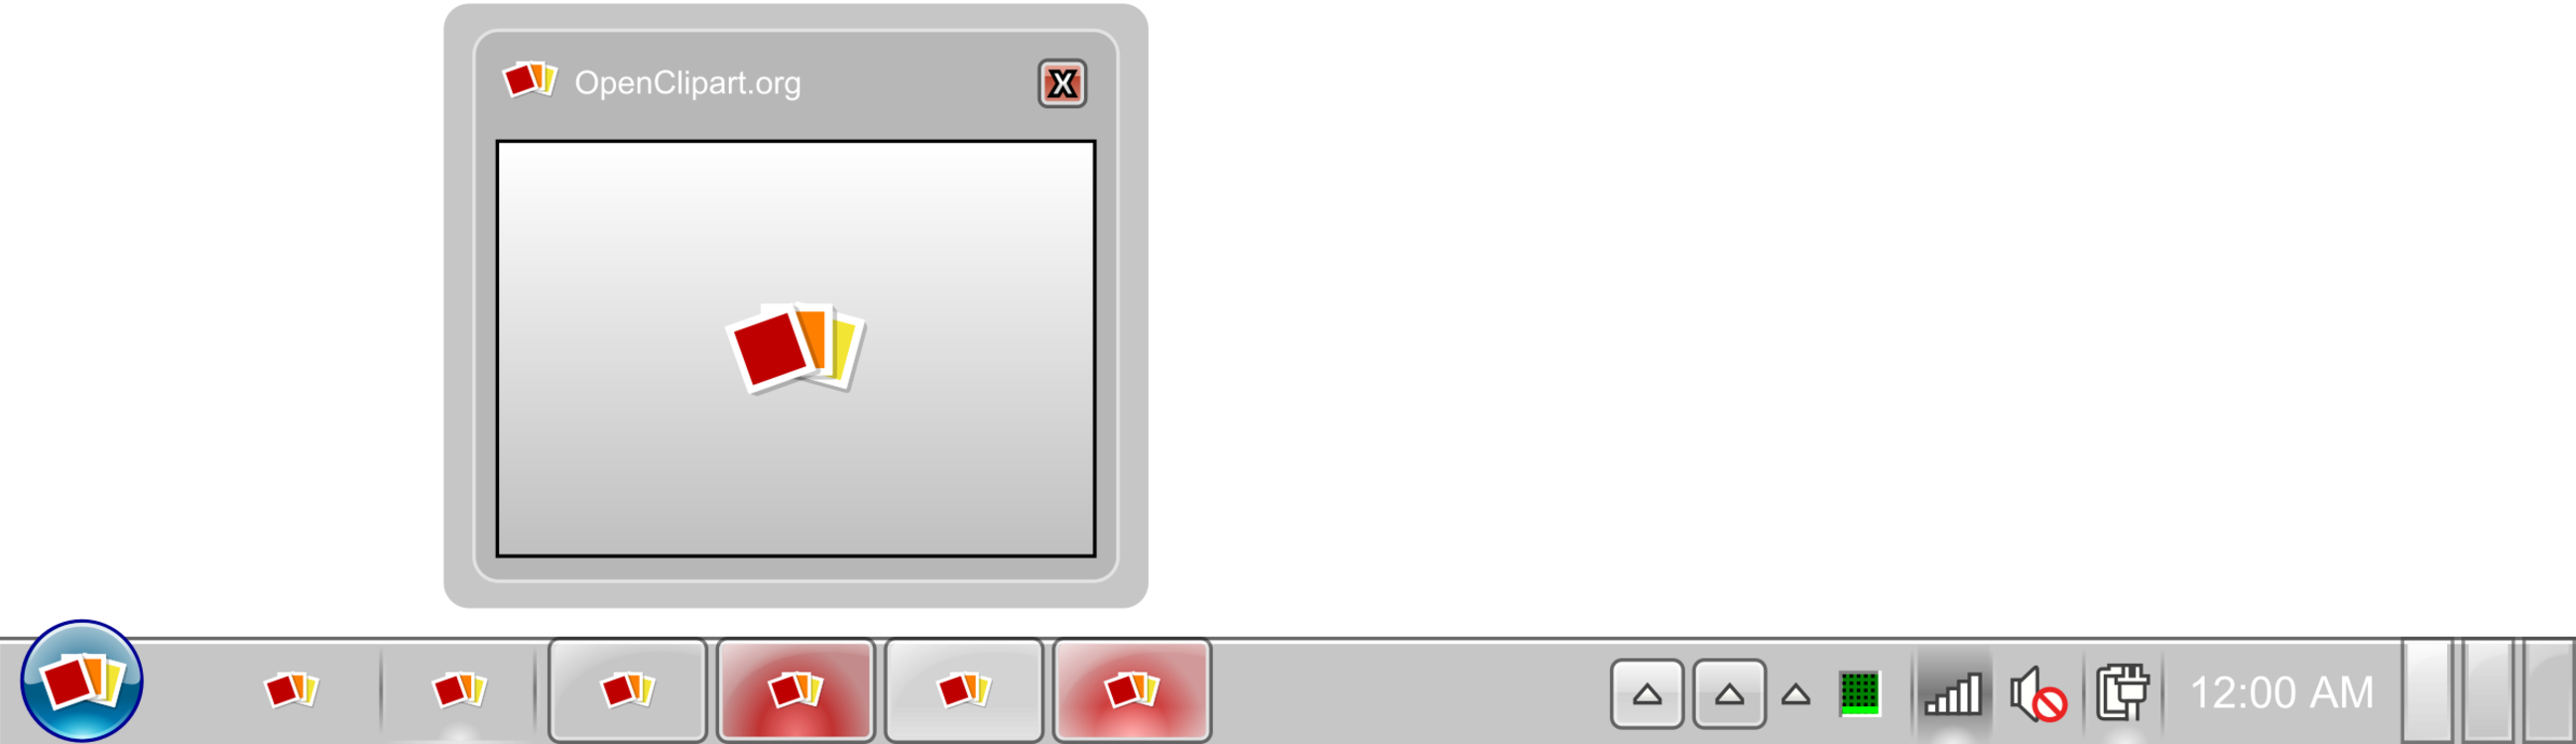 Панель задач. Панель задач Windows 7. Панель задач Windows PNG. Панель задач Windows 7 PNG. Taskbar icons